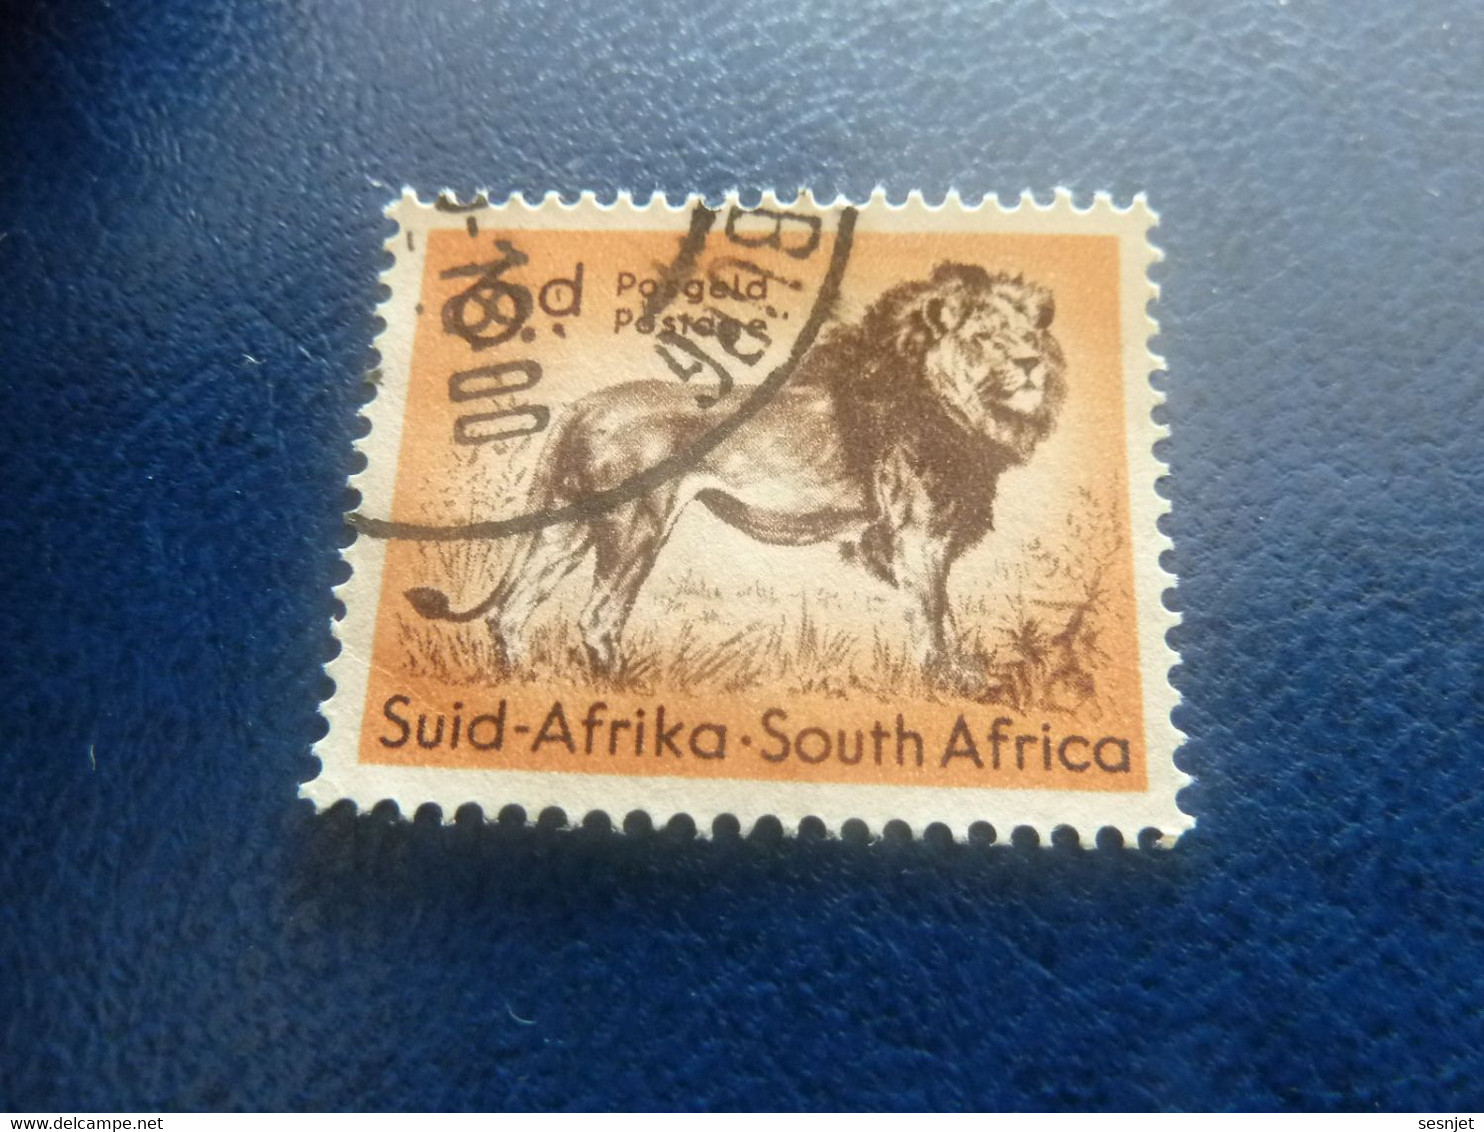 Suid-Africa - South Africa - Lion - 6 D. - Postage - Multicolore - Oblitéré - Année 1986 - - Gebruikt